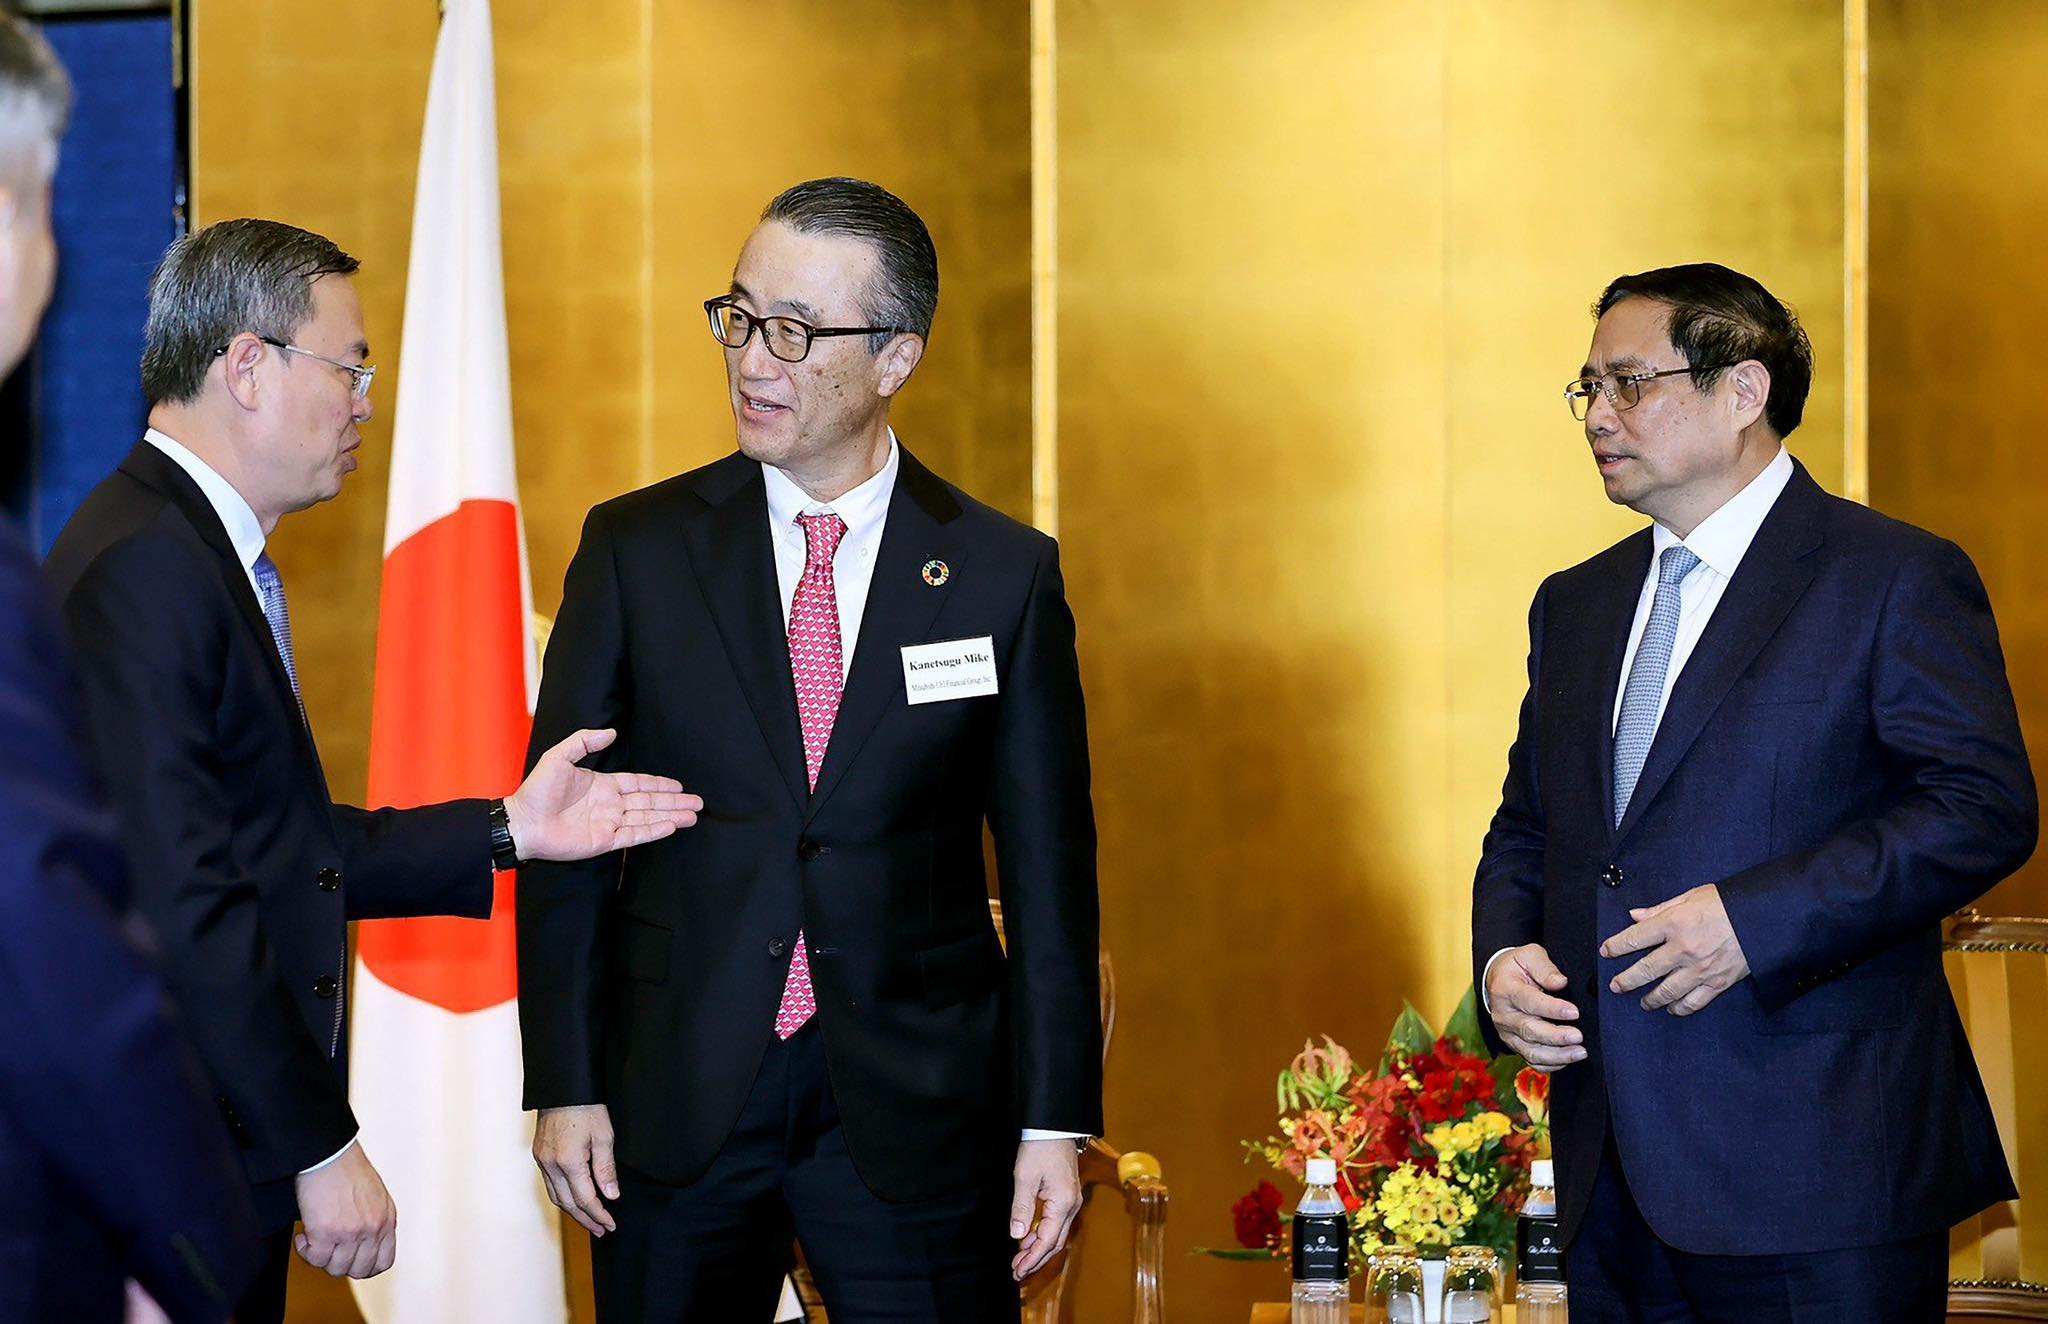 Chủ tịch HĐQT VietinBank tham dự buổi tiếp Chủ tịch Tập đoàn MUFG của Thủ tướng Phạm Minh Chính     Ảnh: Nhật Bắc